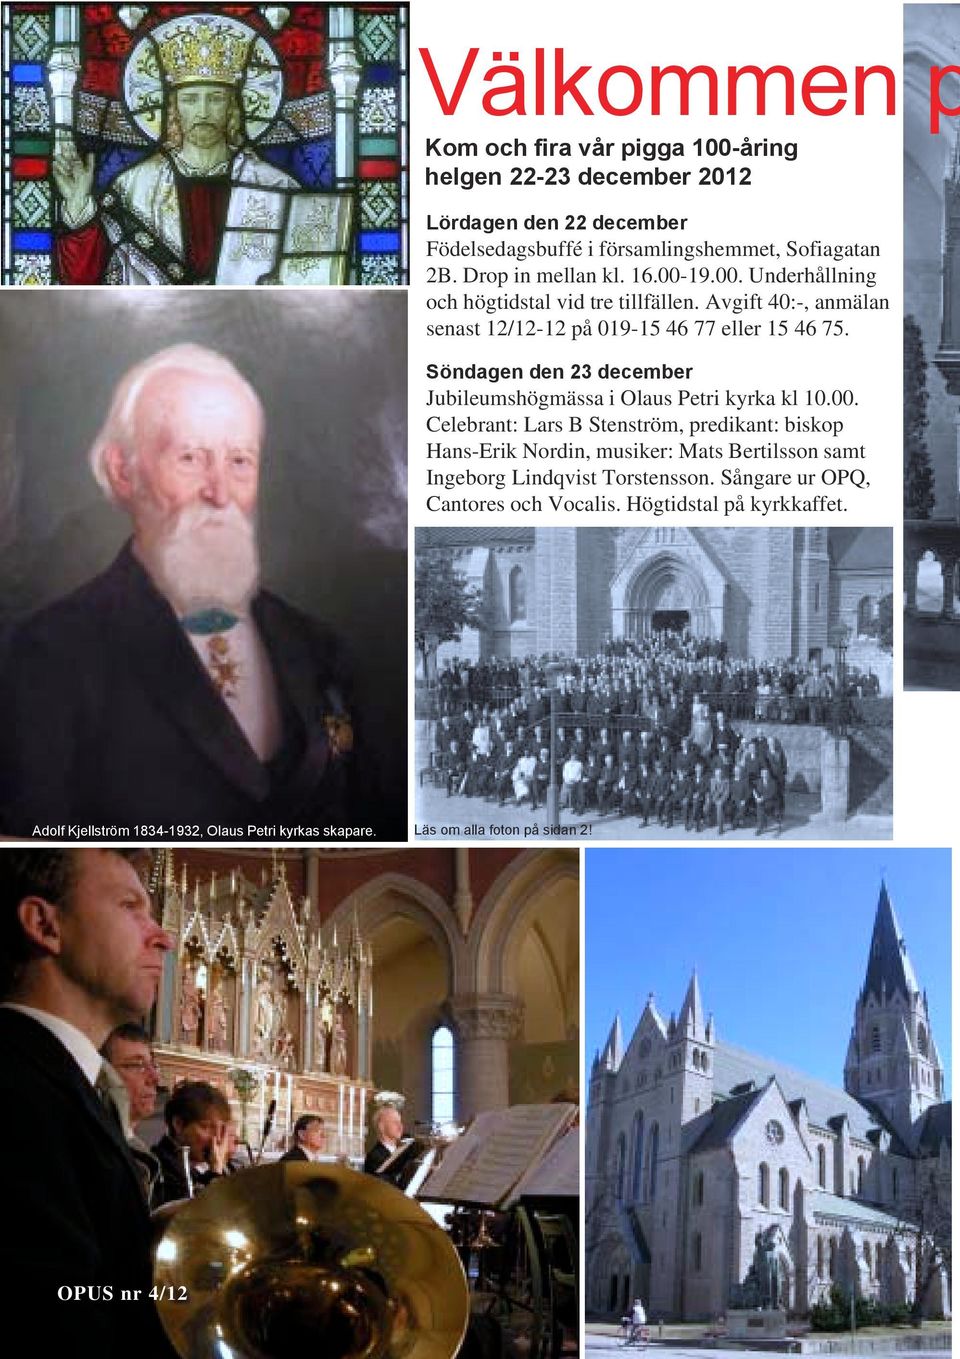 Söndagen den 23 december Jubileumshögmässa i Olaus Petri kyrka kl 10.00.